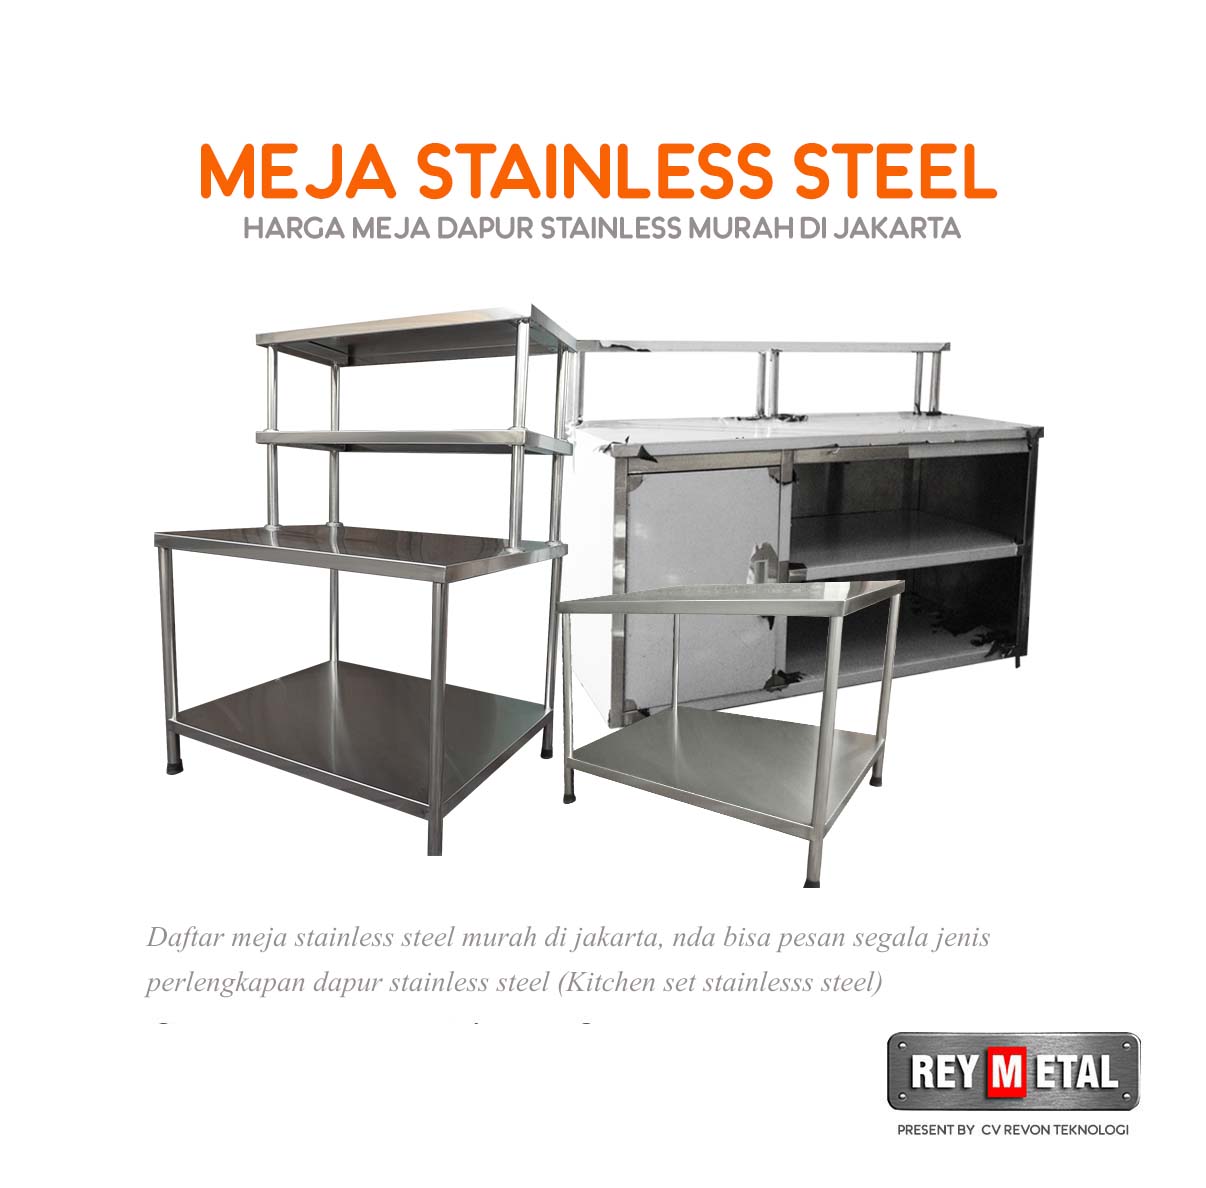  Jual  Meja  Stainless  Steel  di  Jakarta REYMETAL COM 